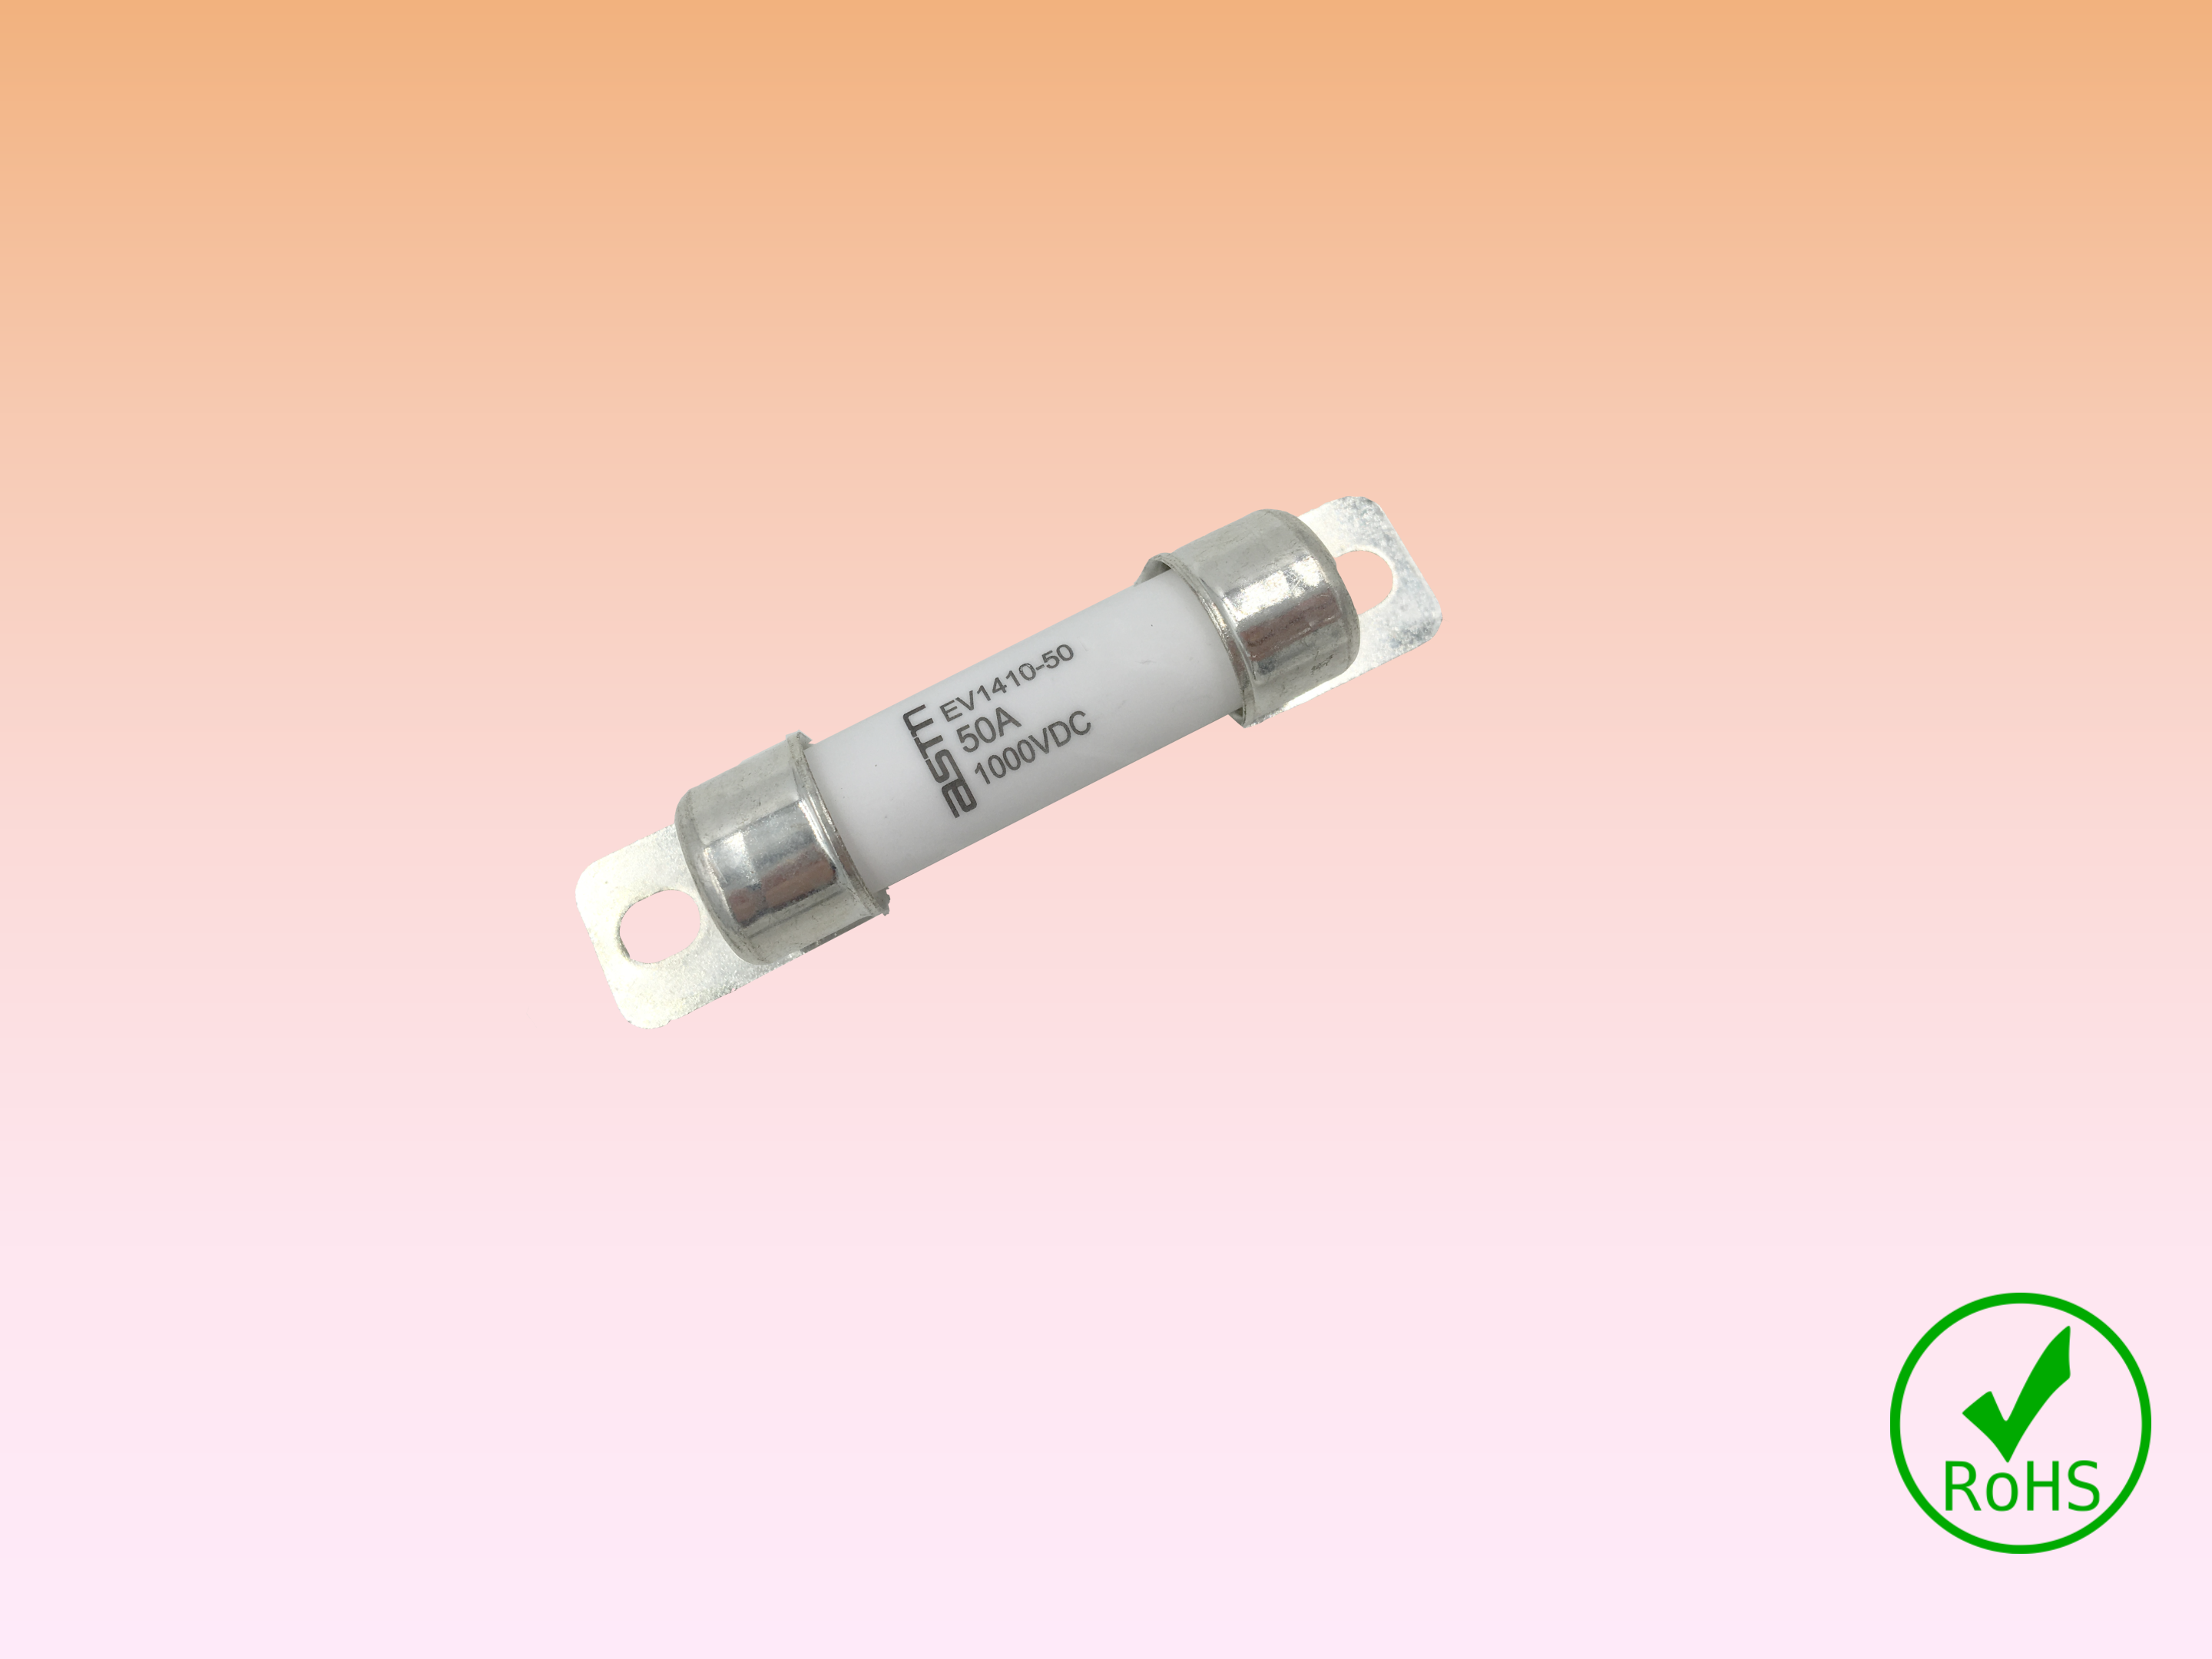 3 A Domestique Secteur fusibles Electrovision F128DP blister de 4 